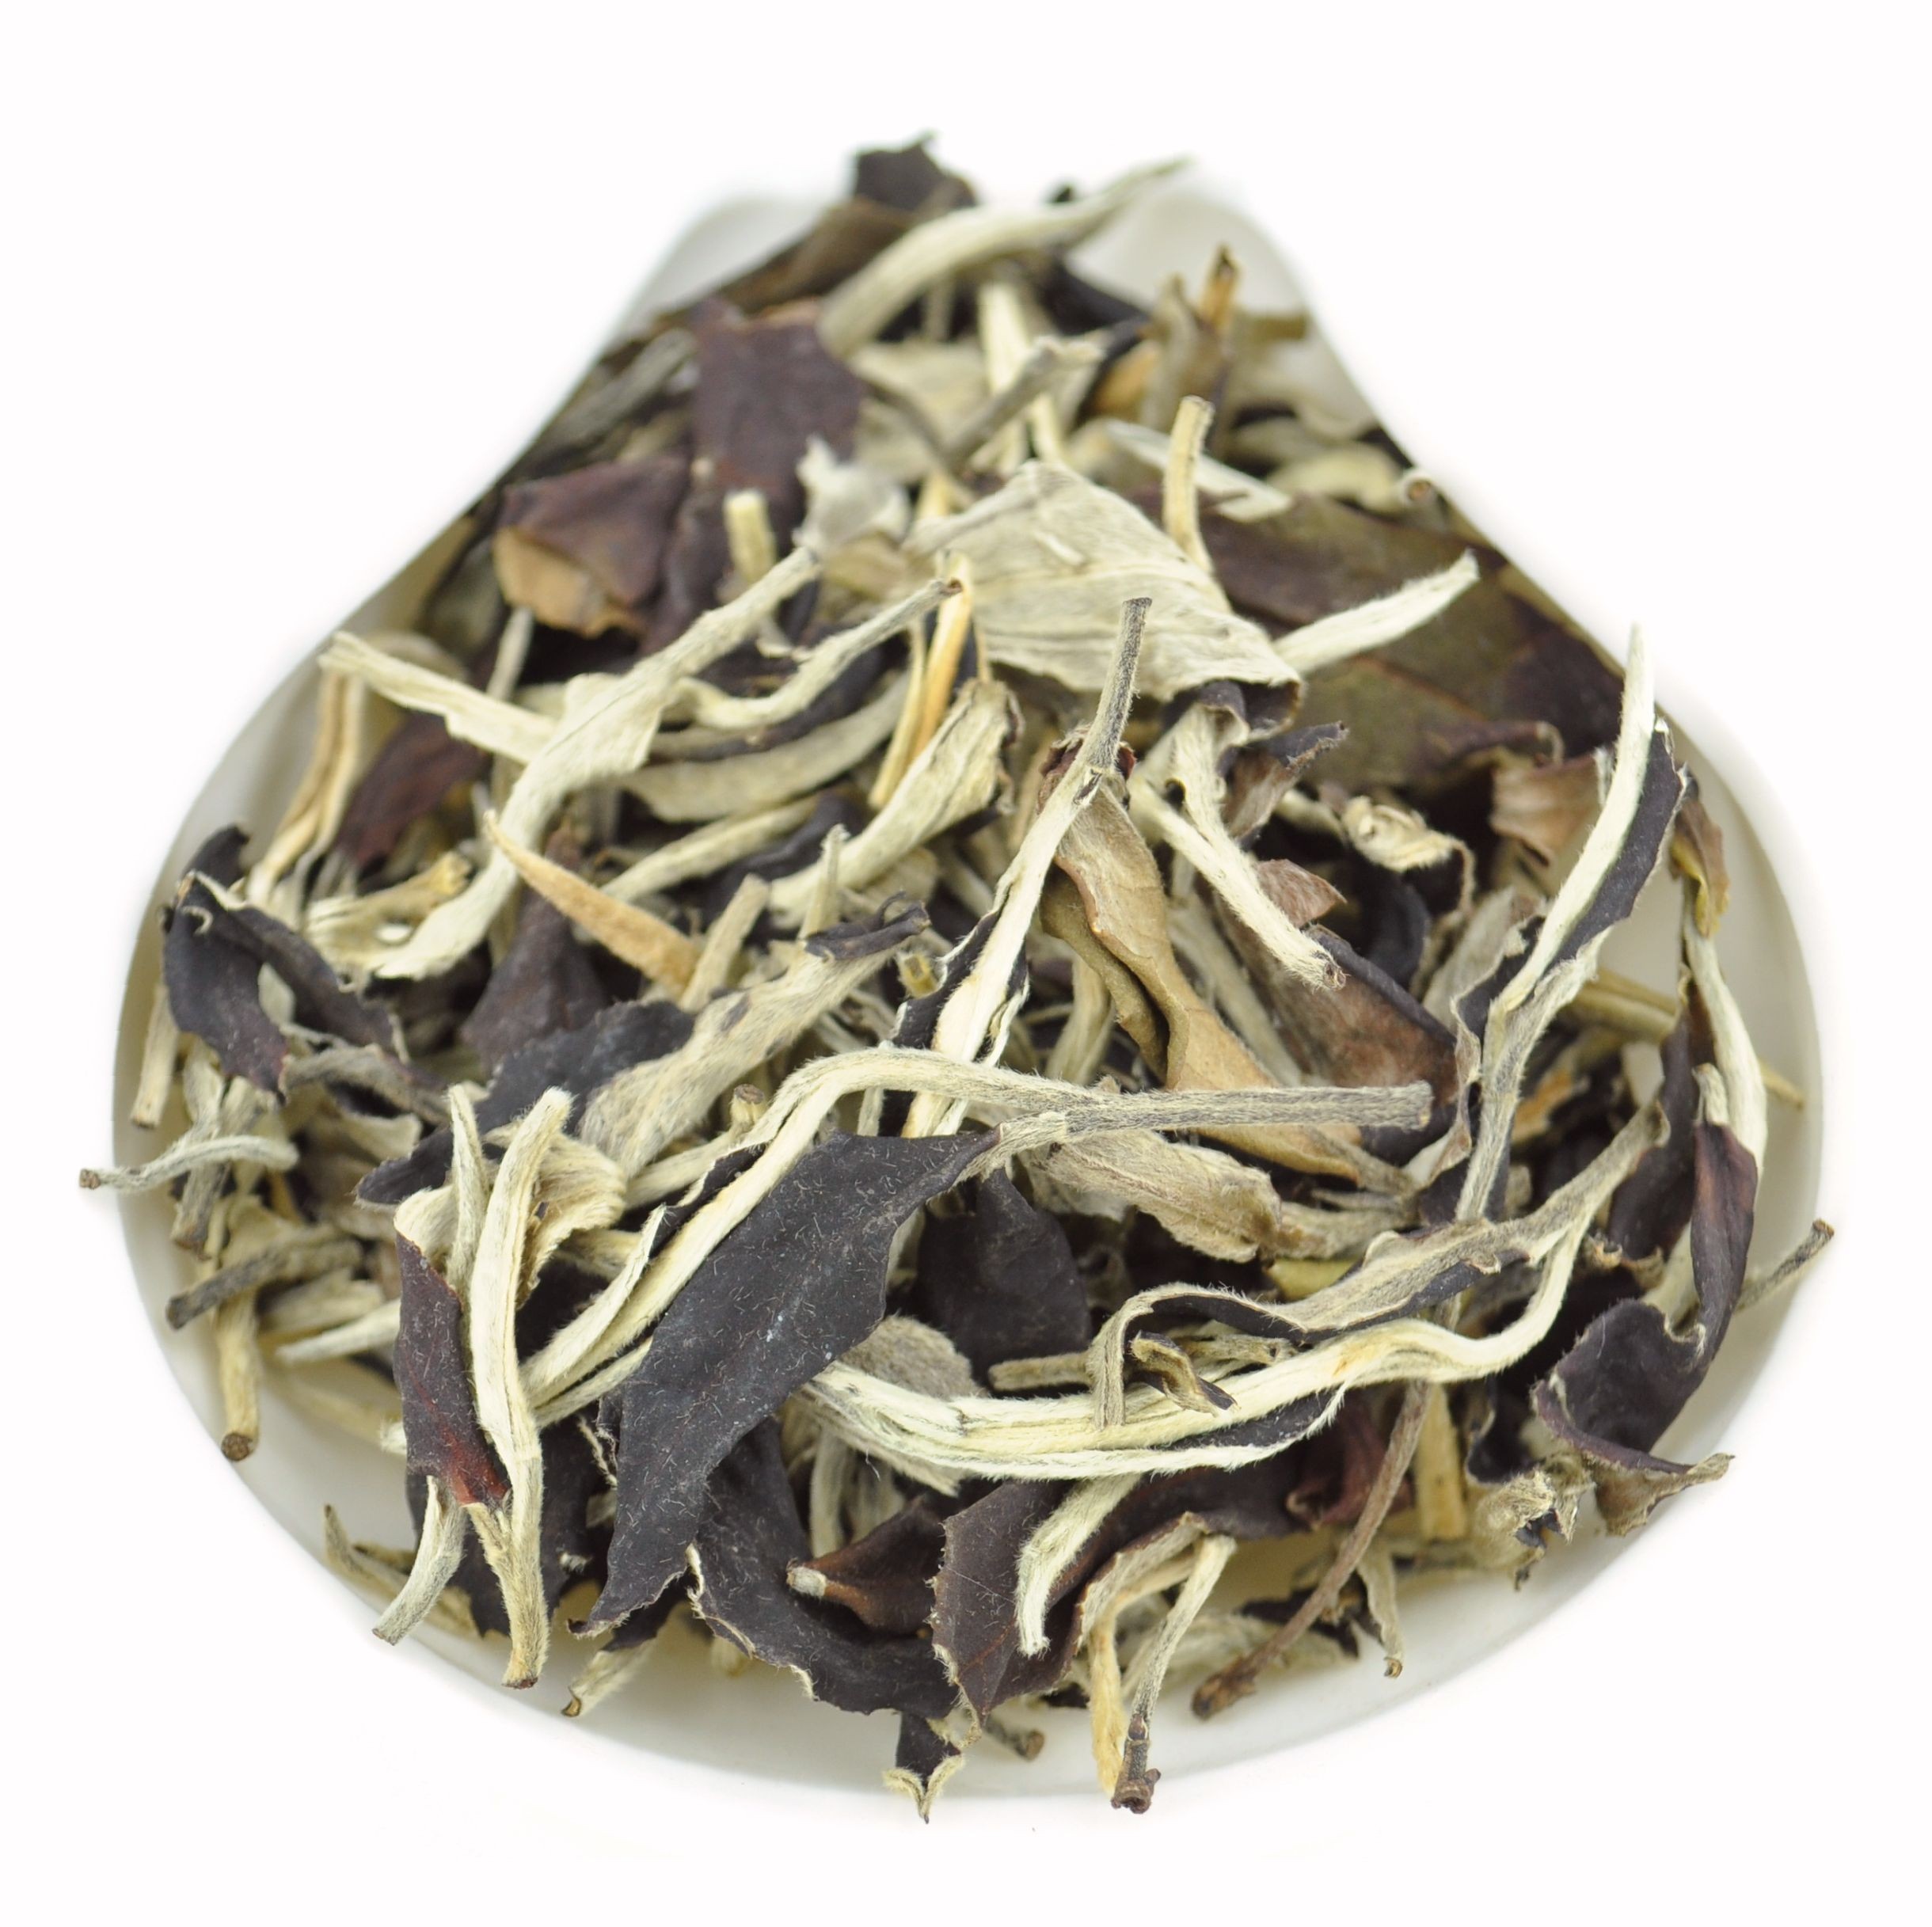 Yunnan Yue Guang Bai Air-Dried White tea * Autumn 2015